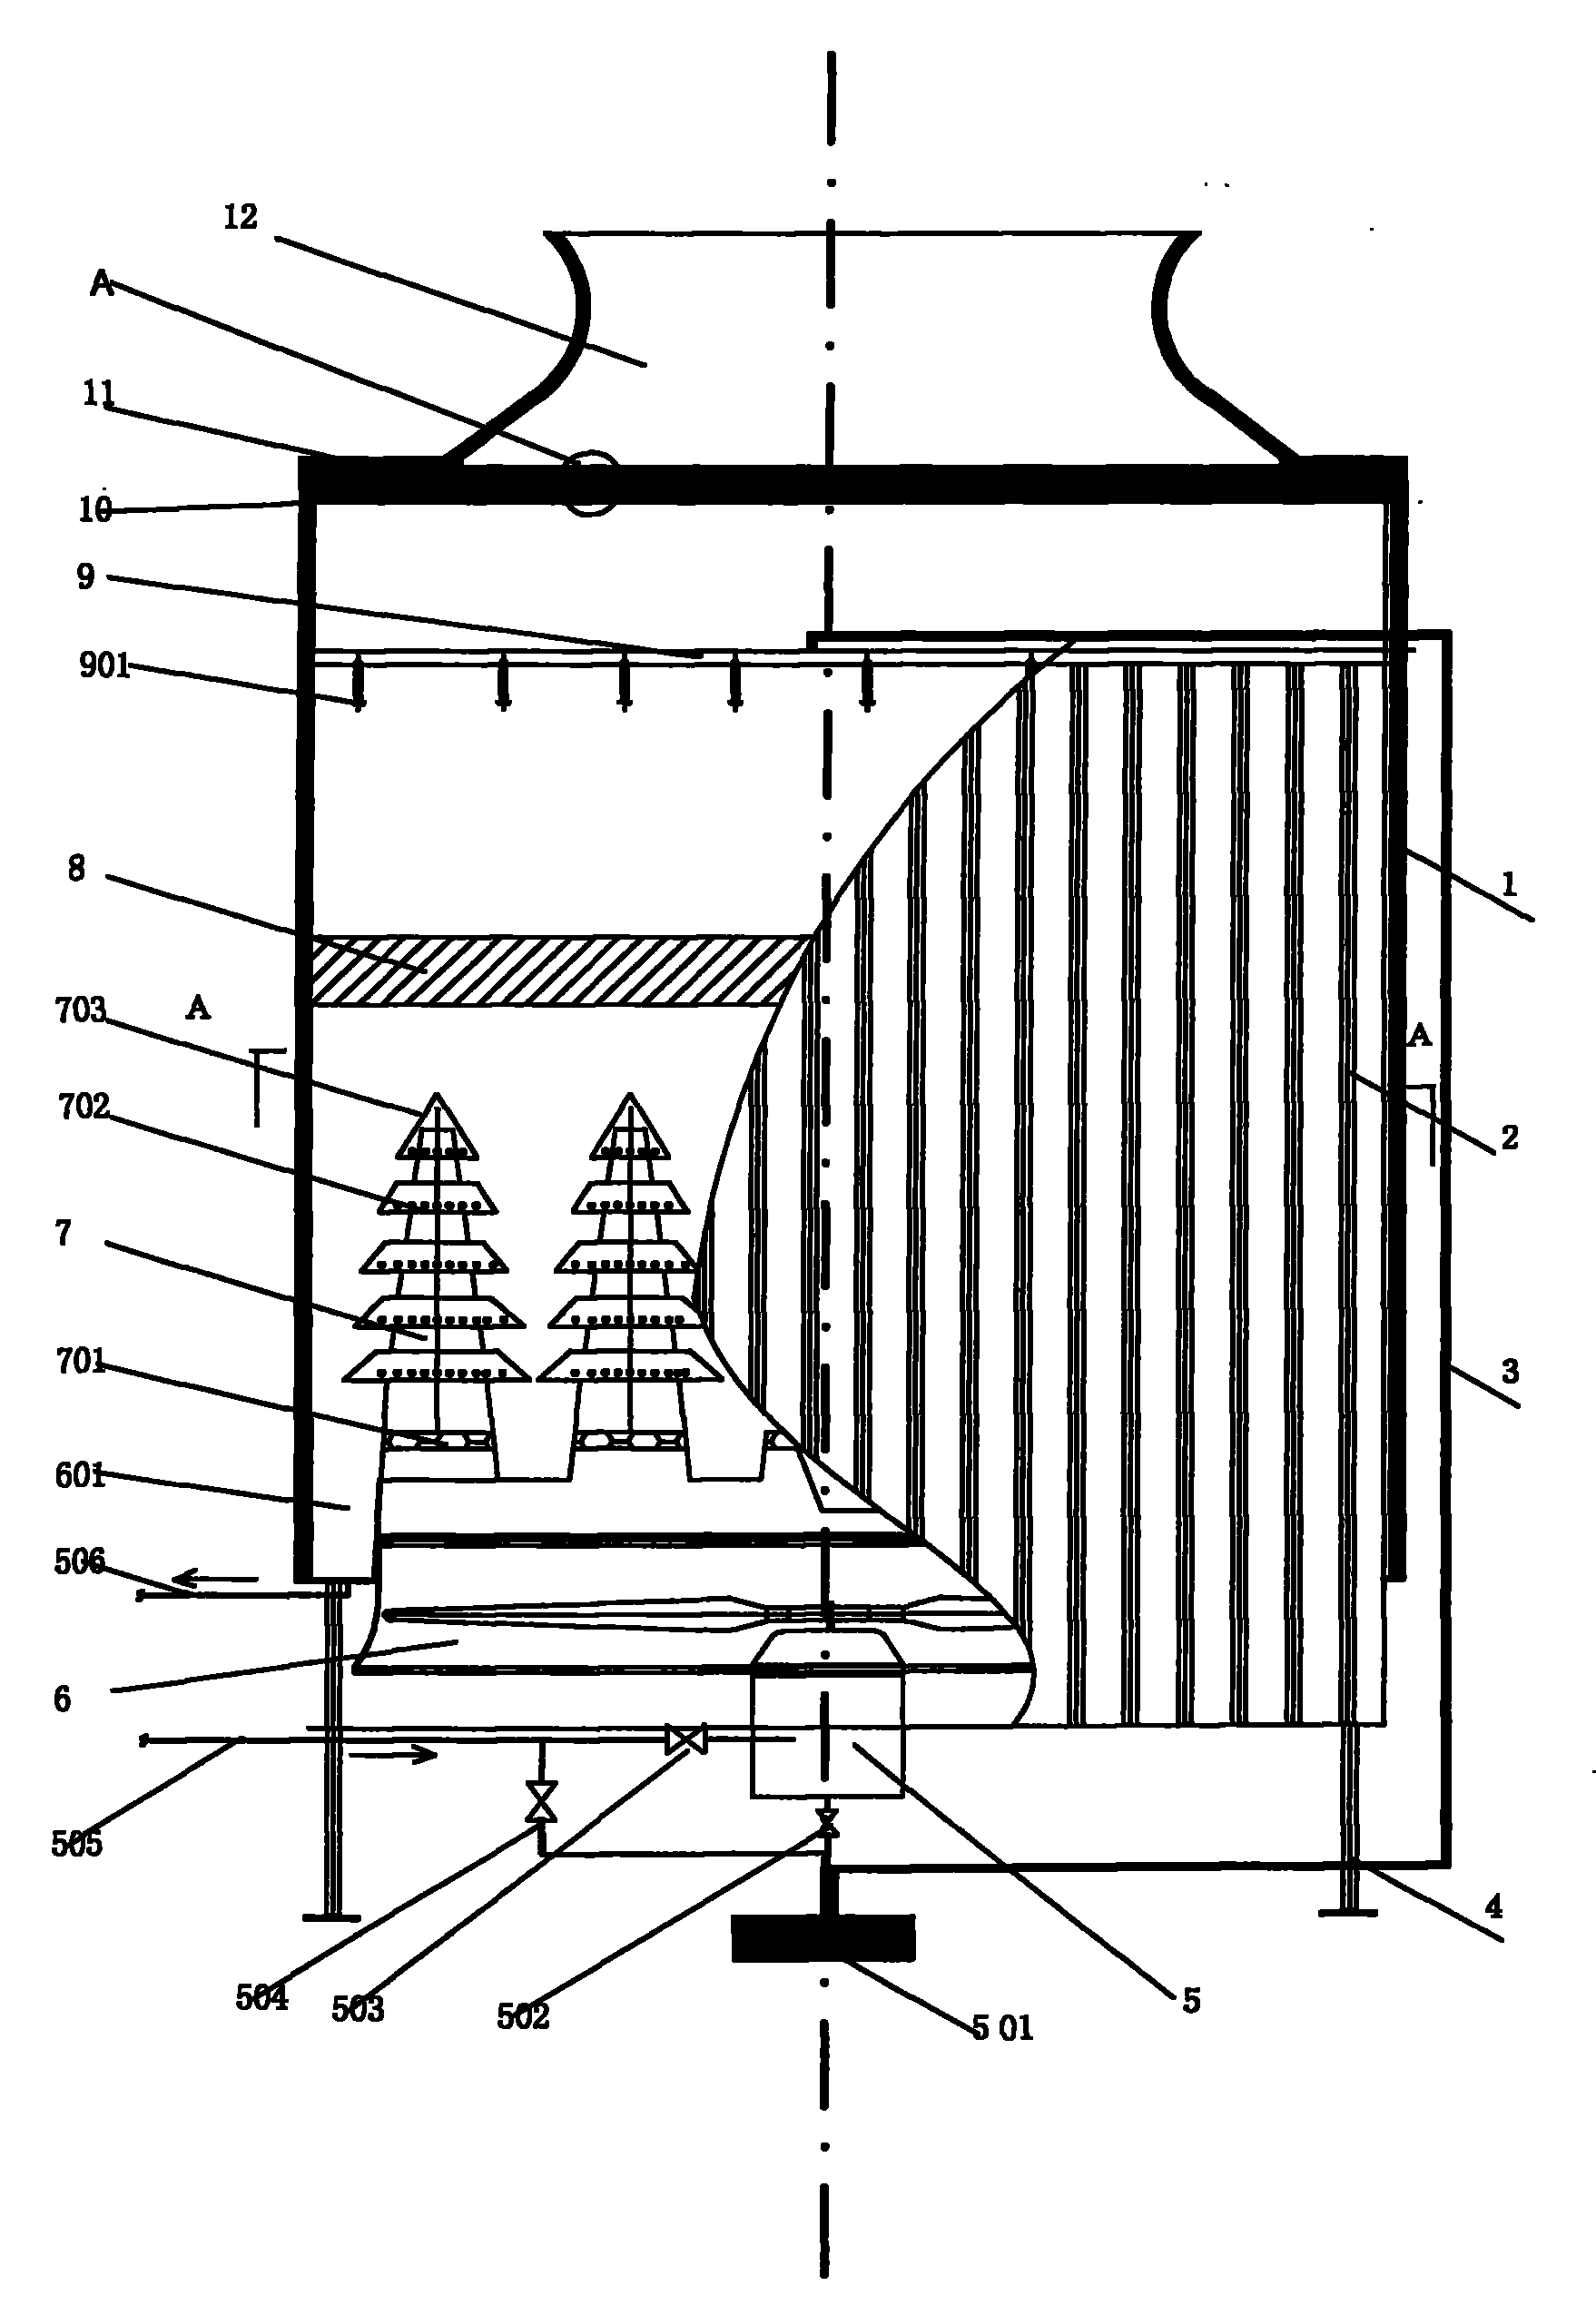 冷却塔立体图图片